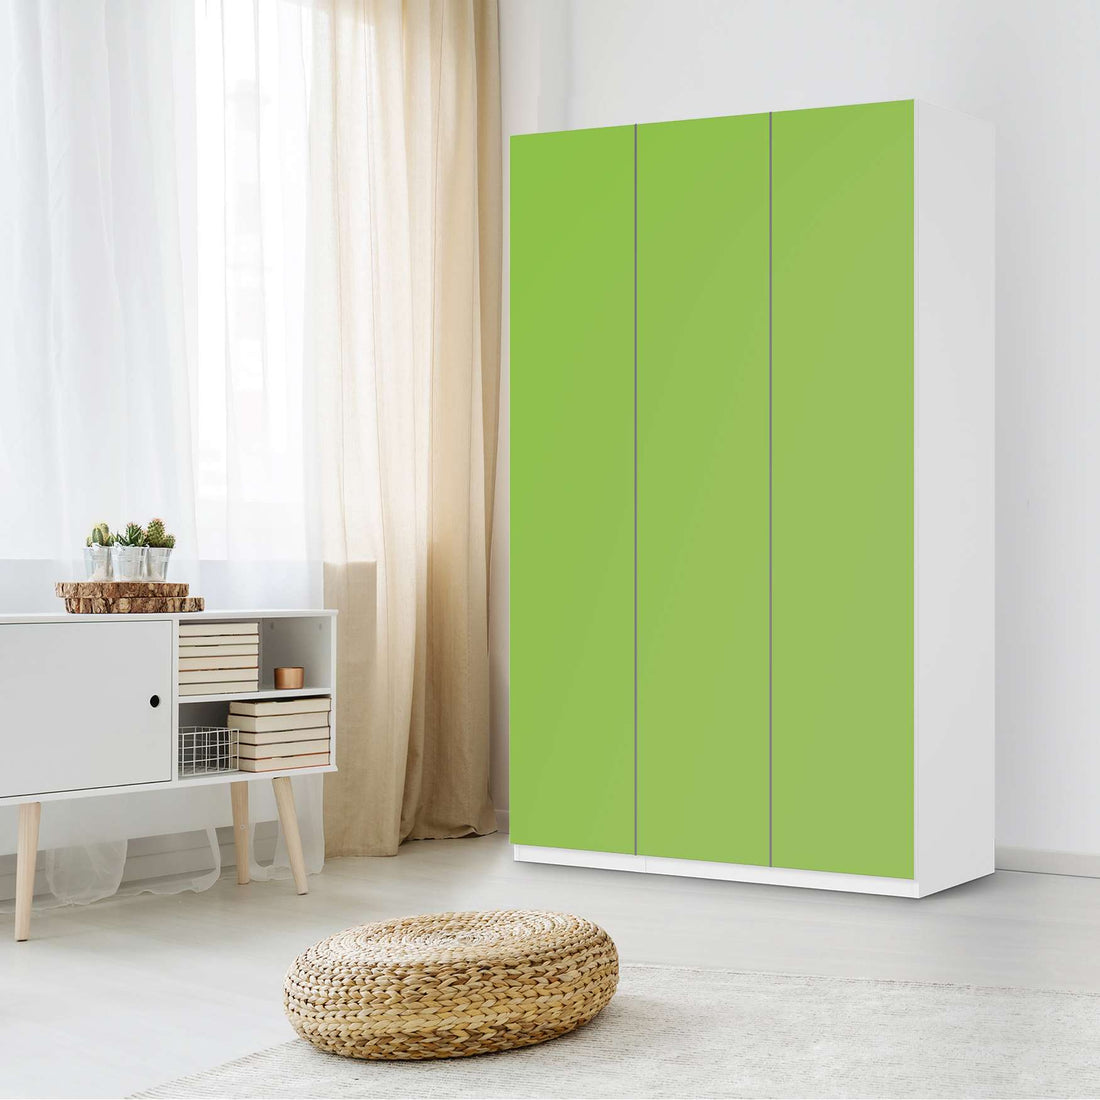 Selbstklebende Folie Hellgrün Dark - IKEA Pax Schrank 236 cm Höhe - 3 Türen - Schlafzimmer